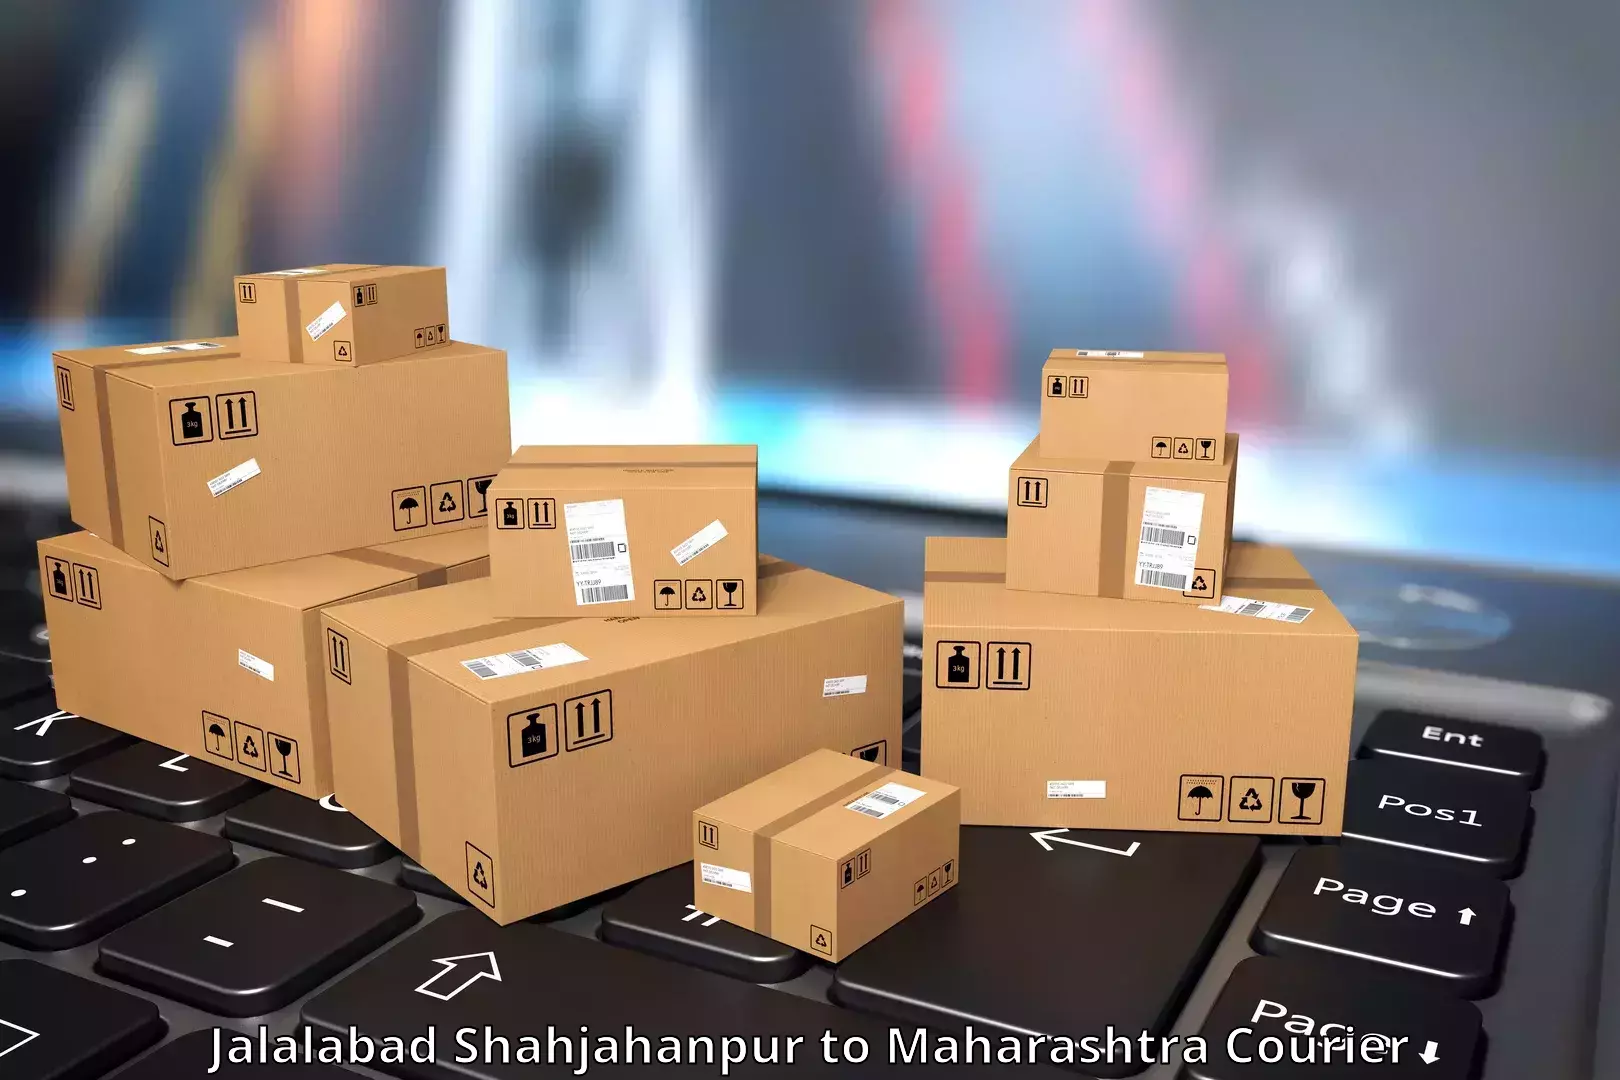 Global logistics network Jalalabad Shahjahanpur to Jawaharlal Nehru Port Nhava Sheva